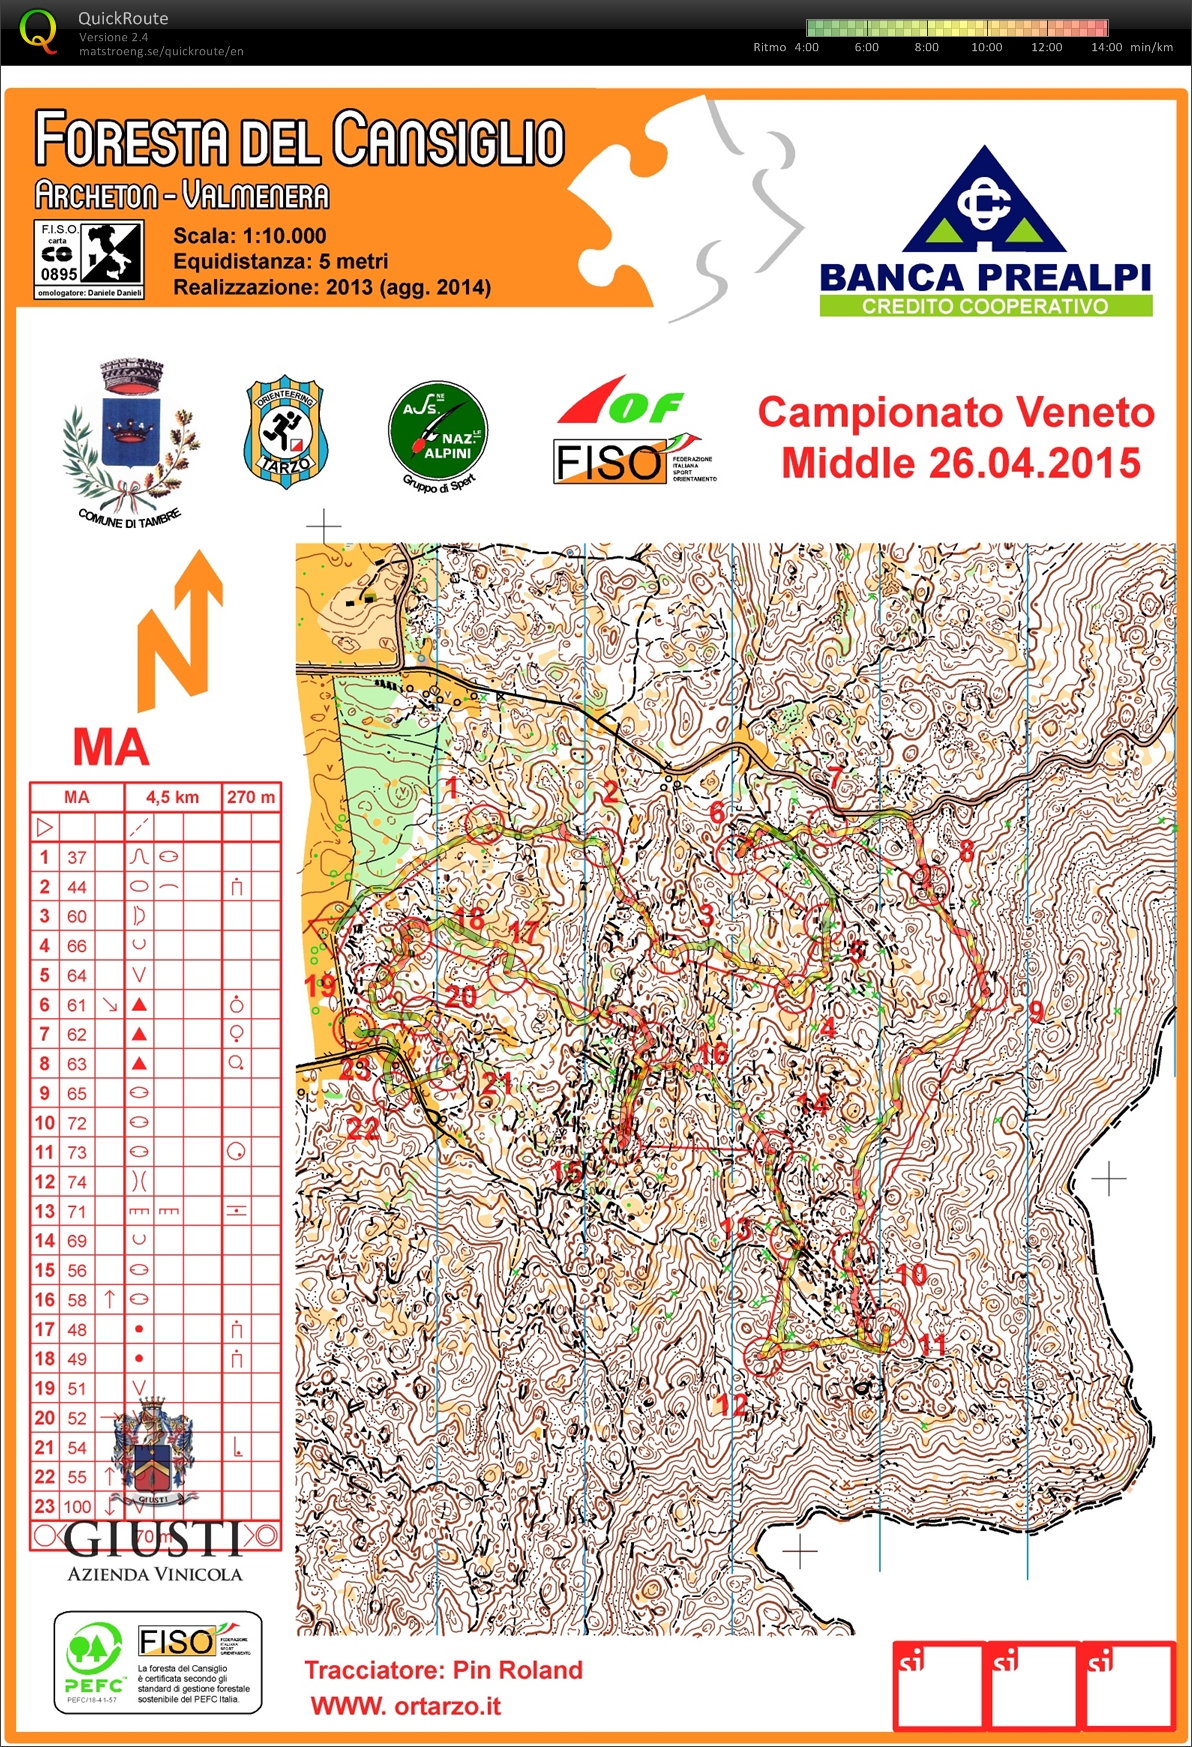 Campionato Veneto Middle 2015 (26-04-2015)